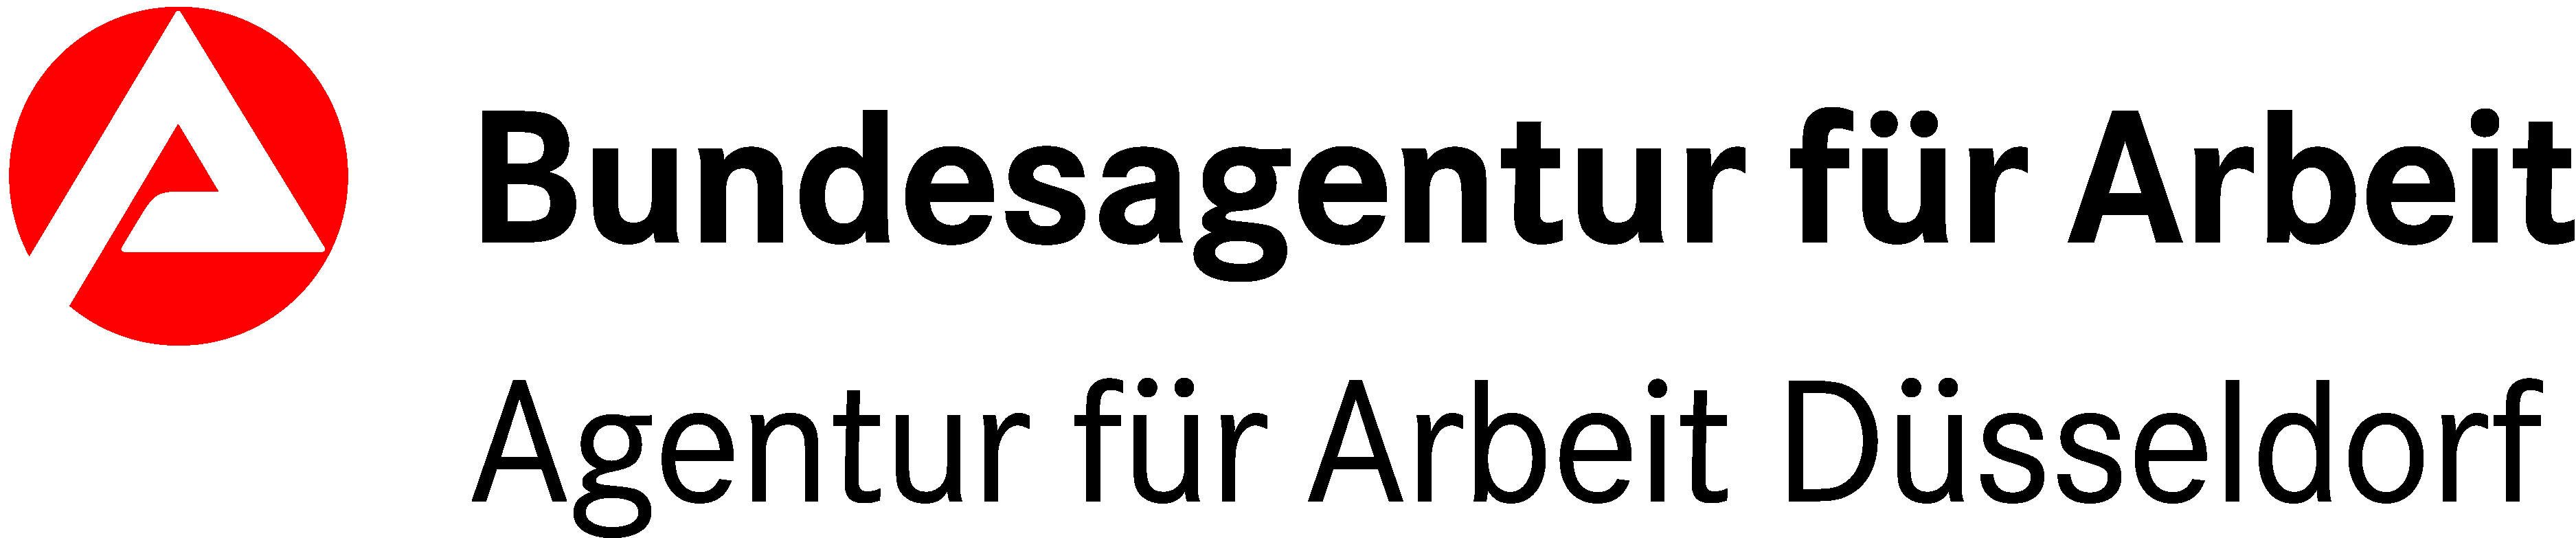 Das Logo der Agentur für Arbeit Düsseldorf ist zu sehen. 